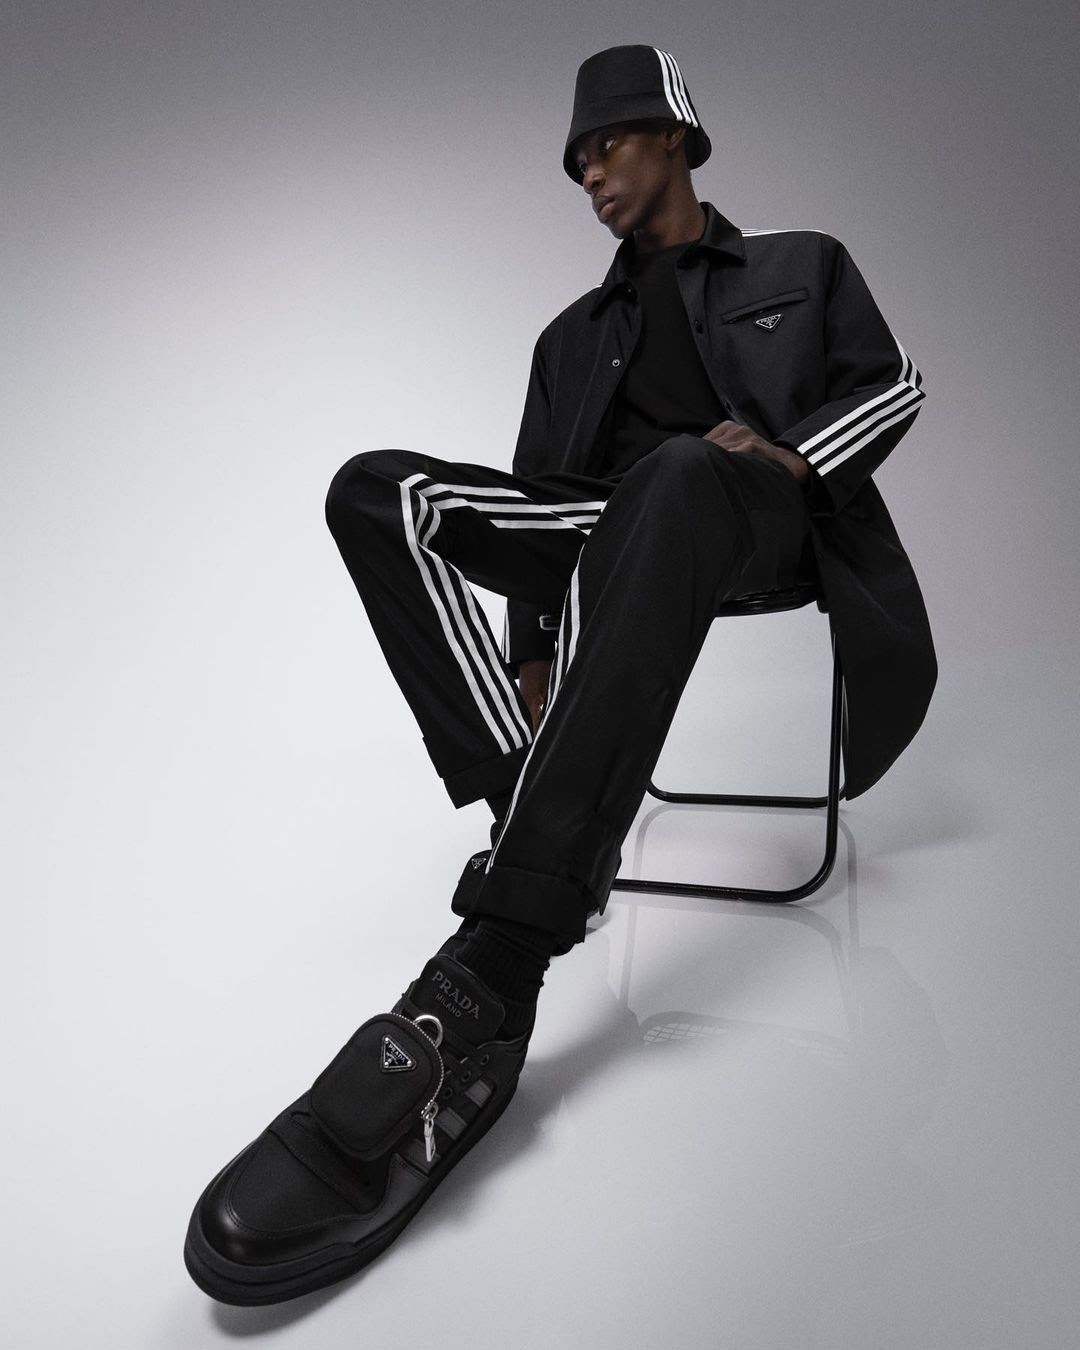 Novo drop da coleção Adidas + Prada chega ao mercado nesta semana. Saiba os detalhes